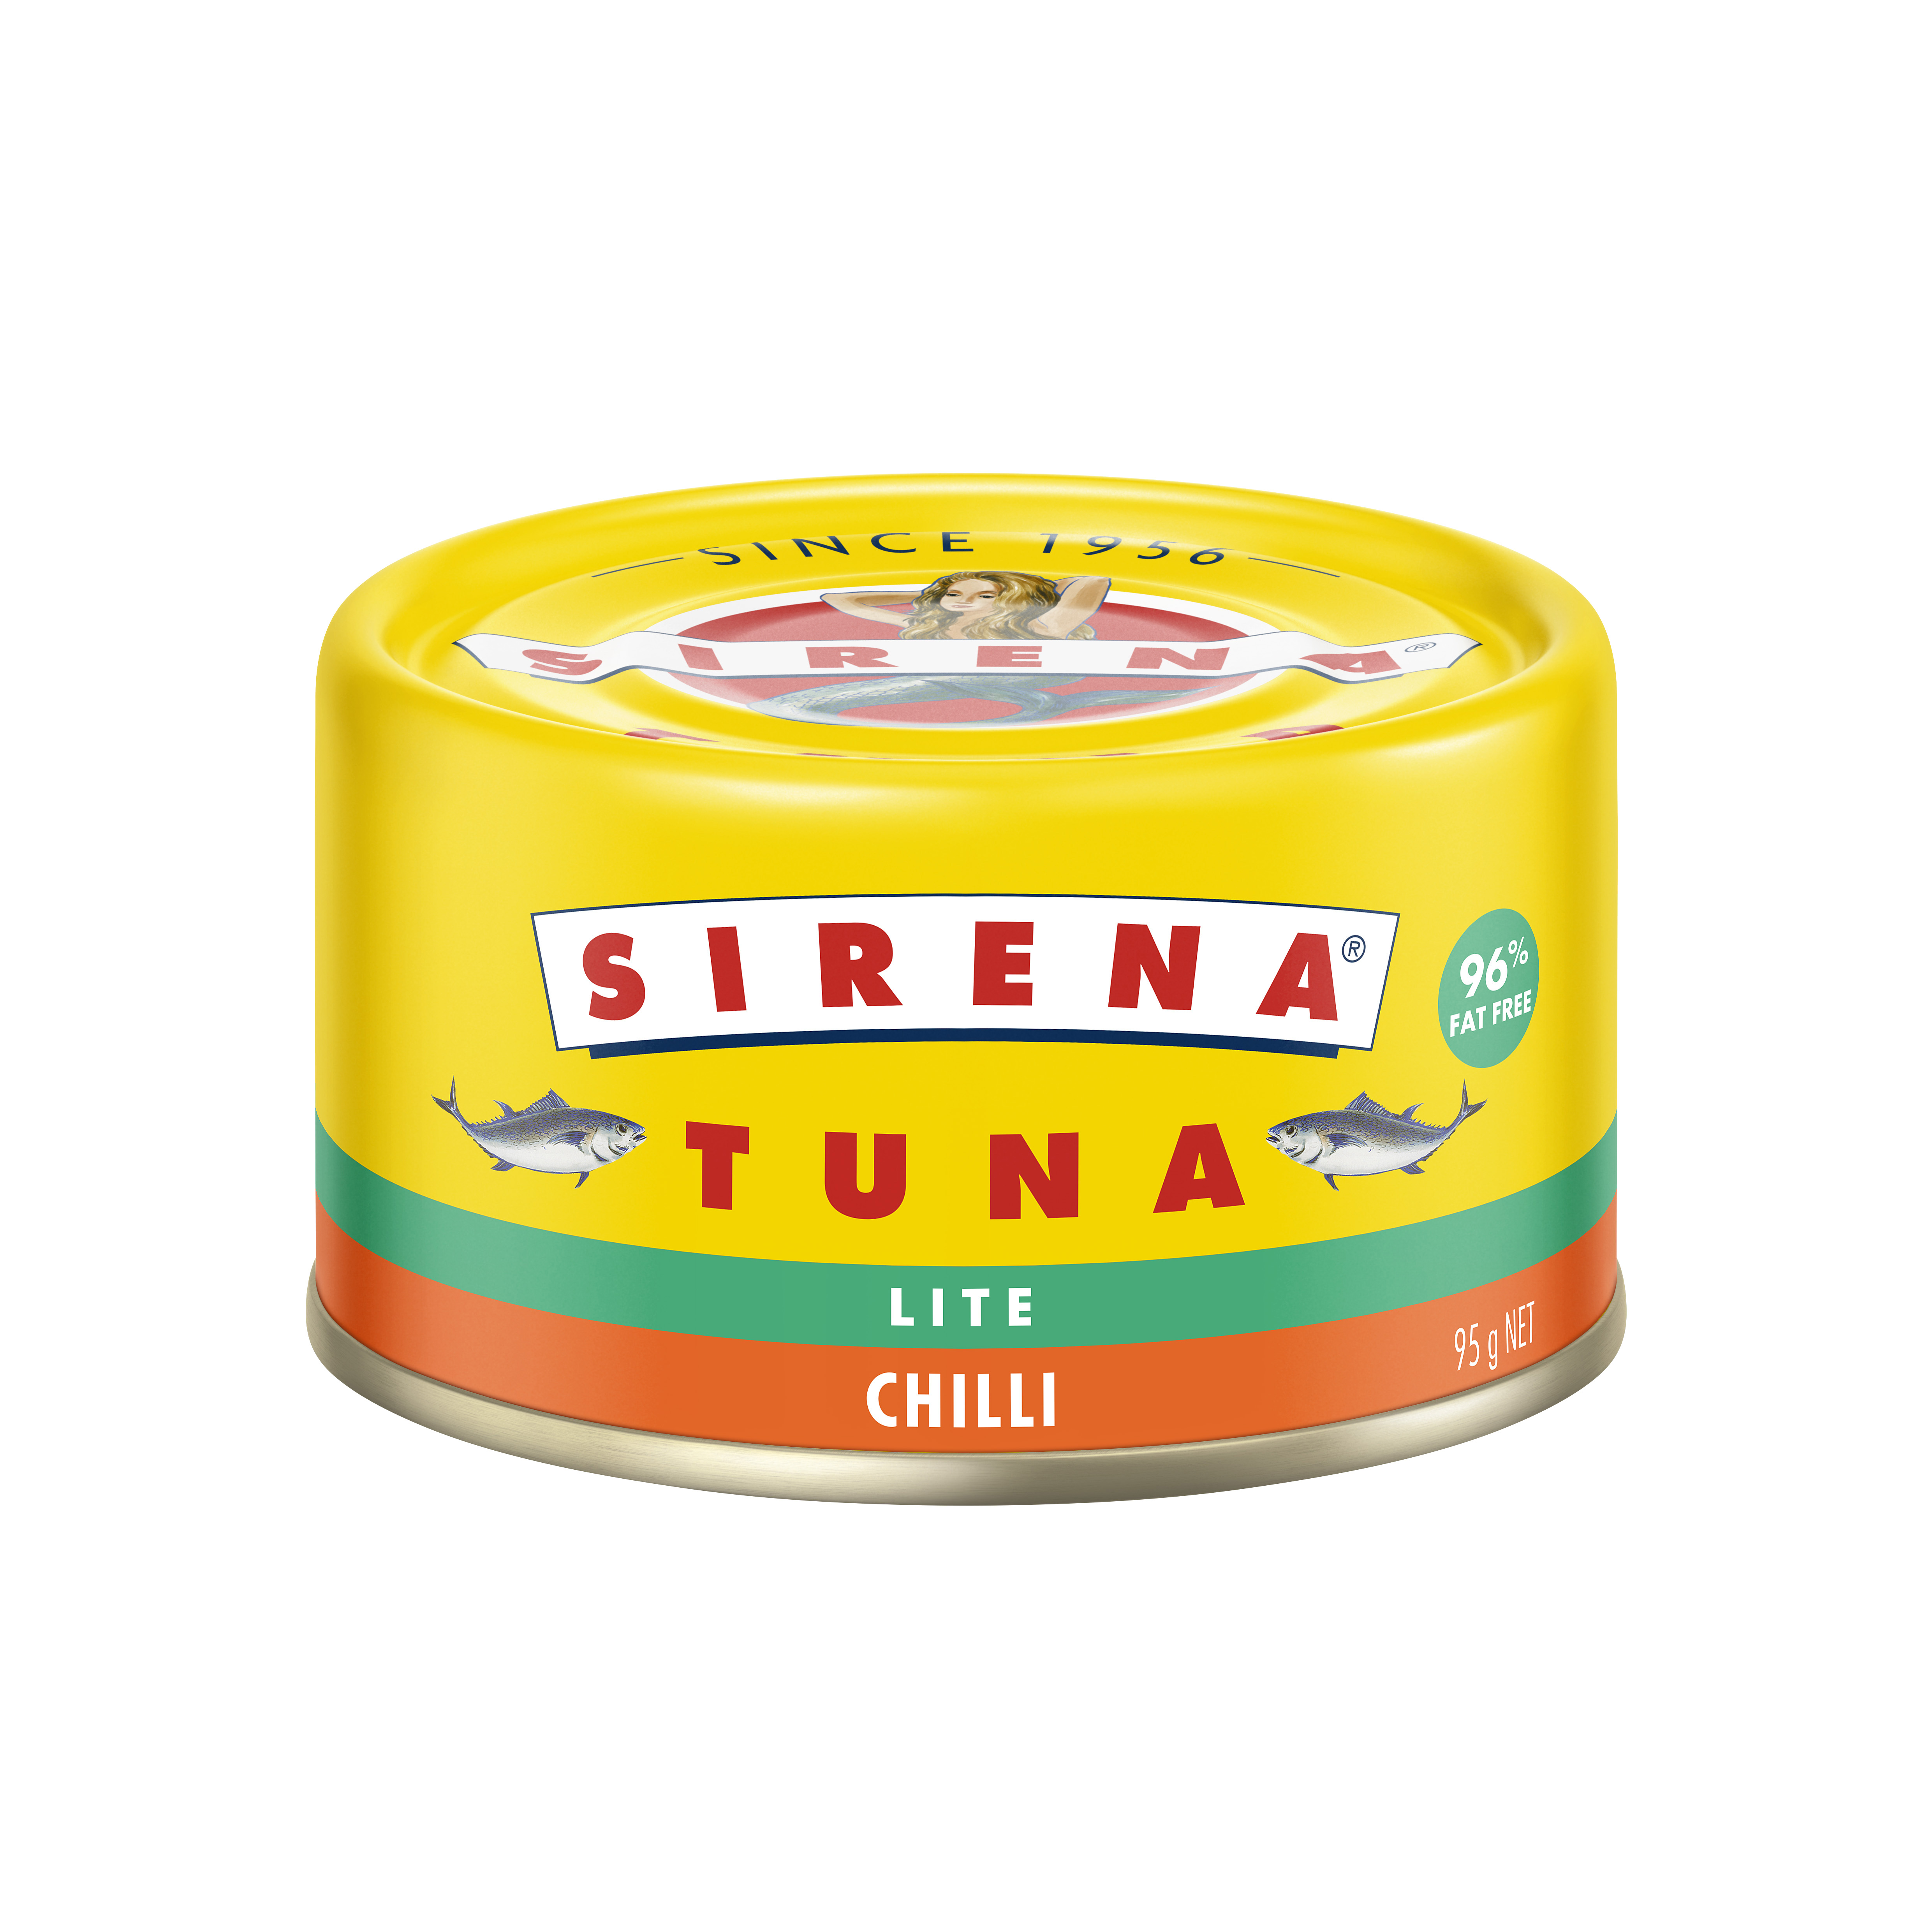 Sirena Tuna Lite Chilli 95g Can